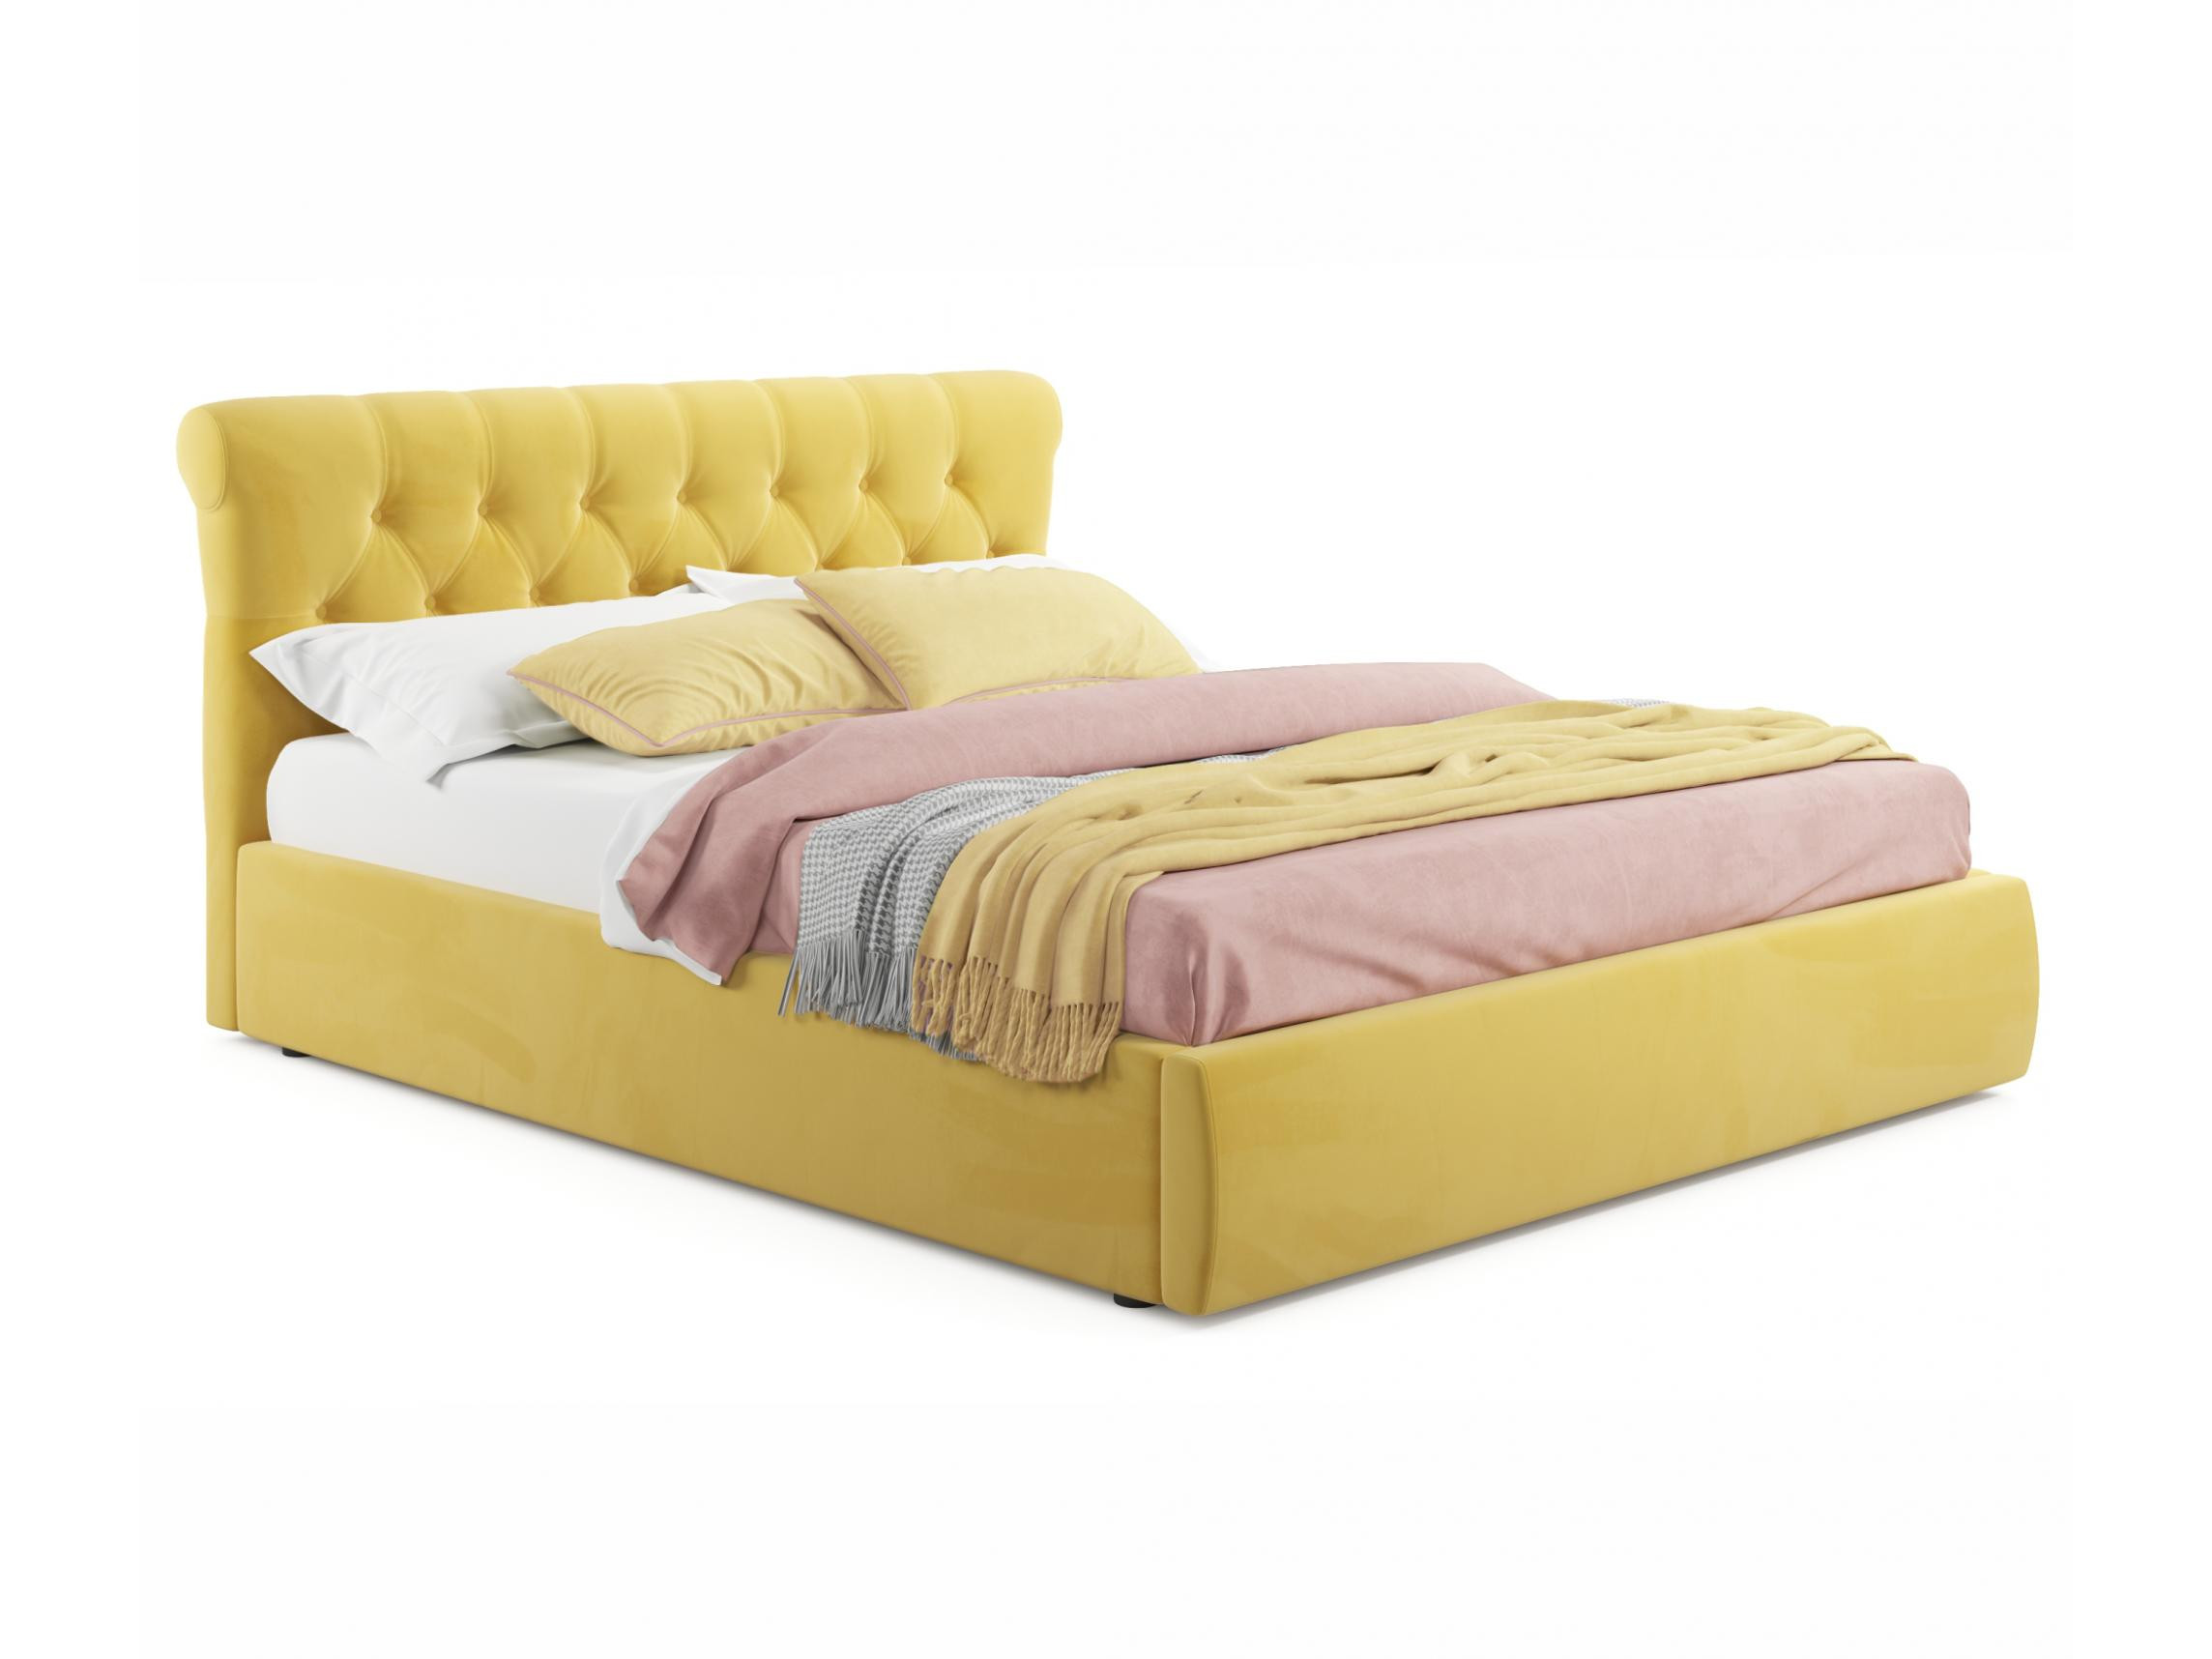 Мягкая кровать Ameli 1400 желтая с подъемным механизмом с матрасом АСТРА желтый, Желтый, Велюр, ДСП мягкая кровать ameli 1600 желтая с подъемным механизмом желтый желтый велюр дсп